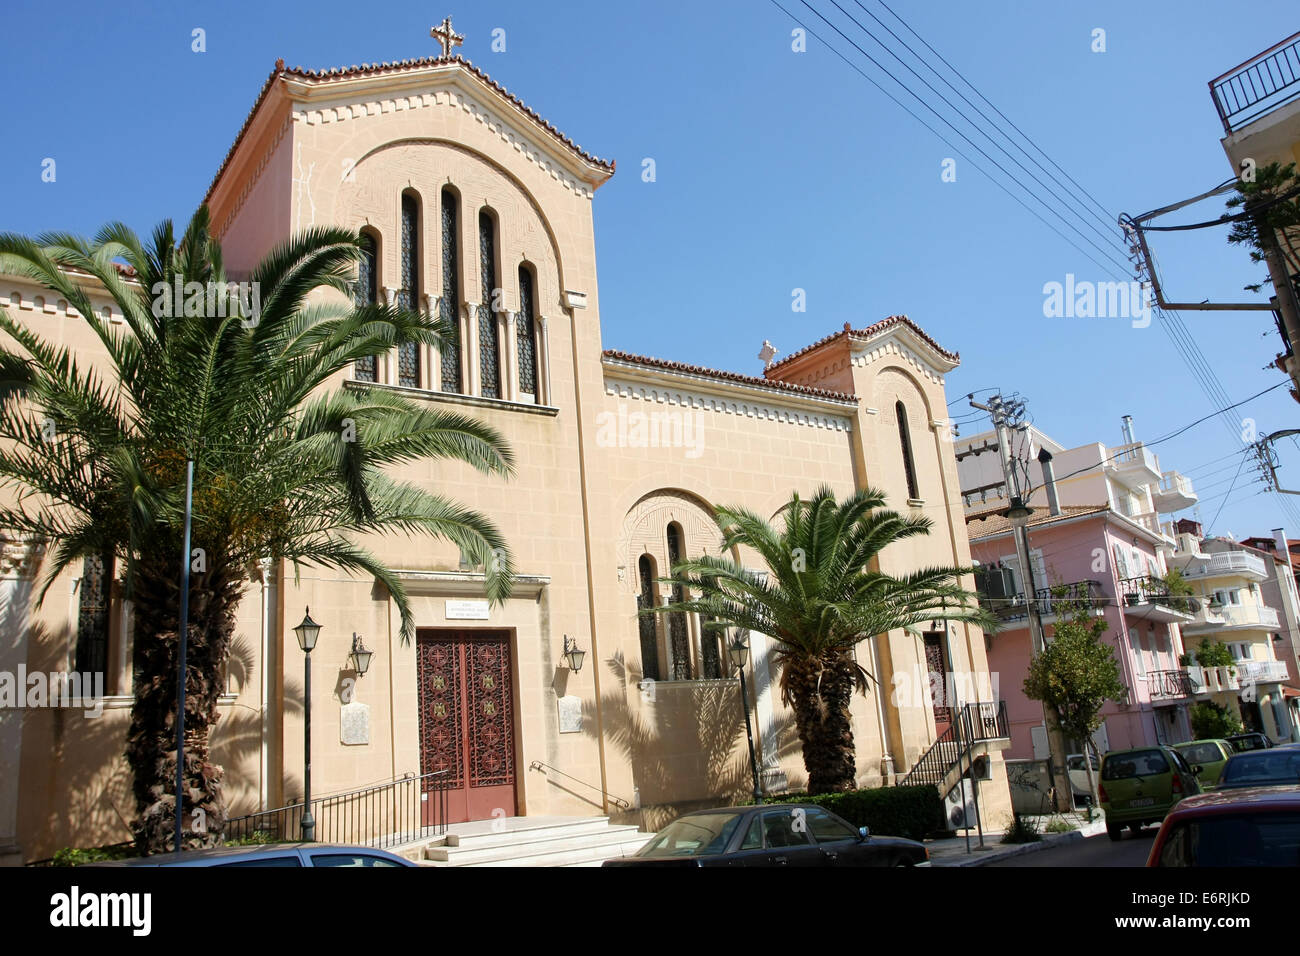 Chiesa ortodossa nella città di Zacinto, Grecia. Foto Stock